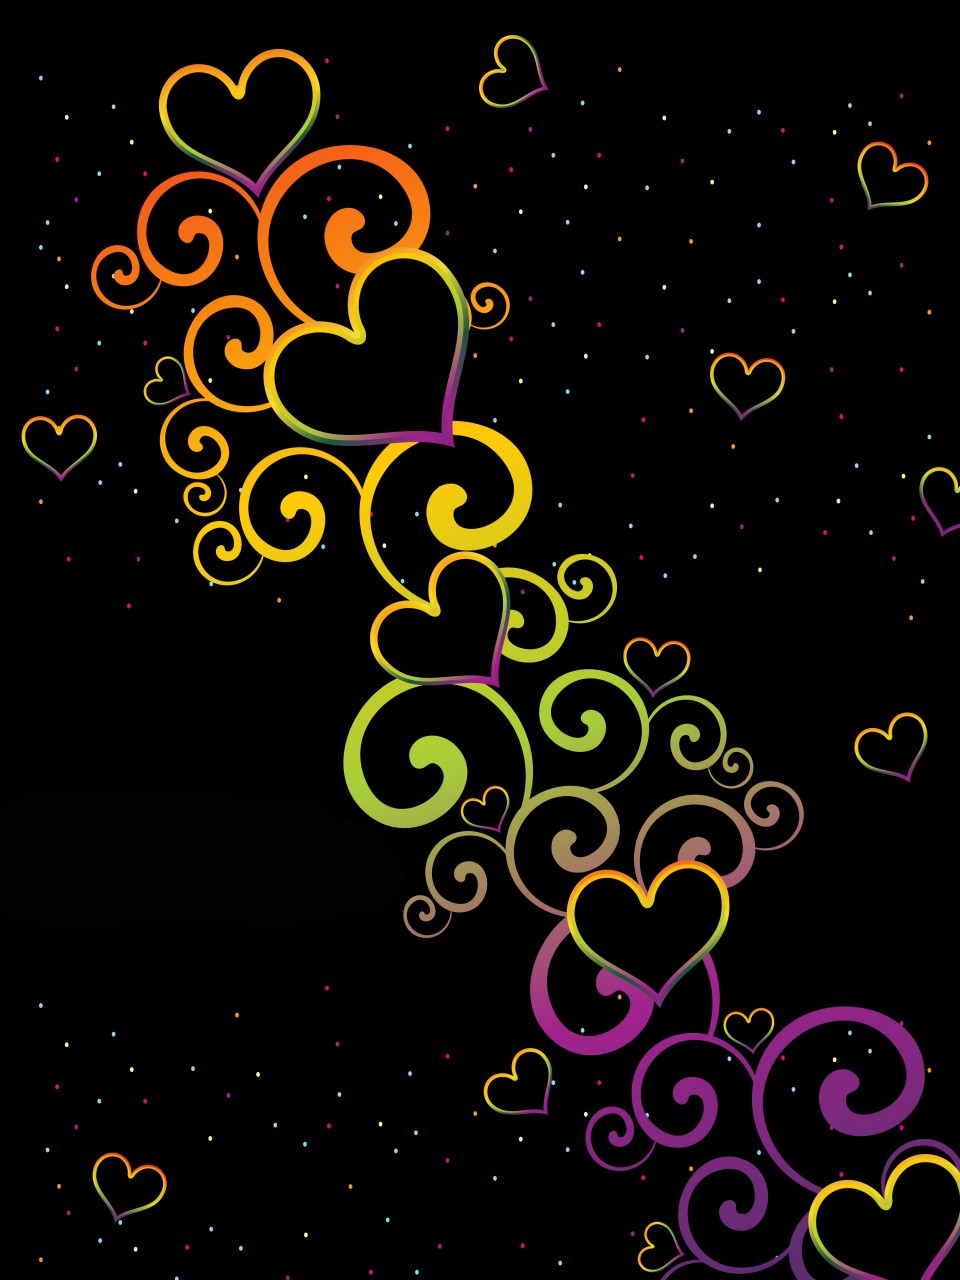 heart design wallpaper,text,heart,pattern,font,design